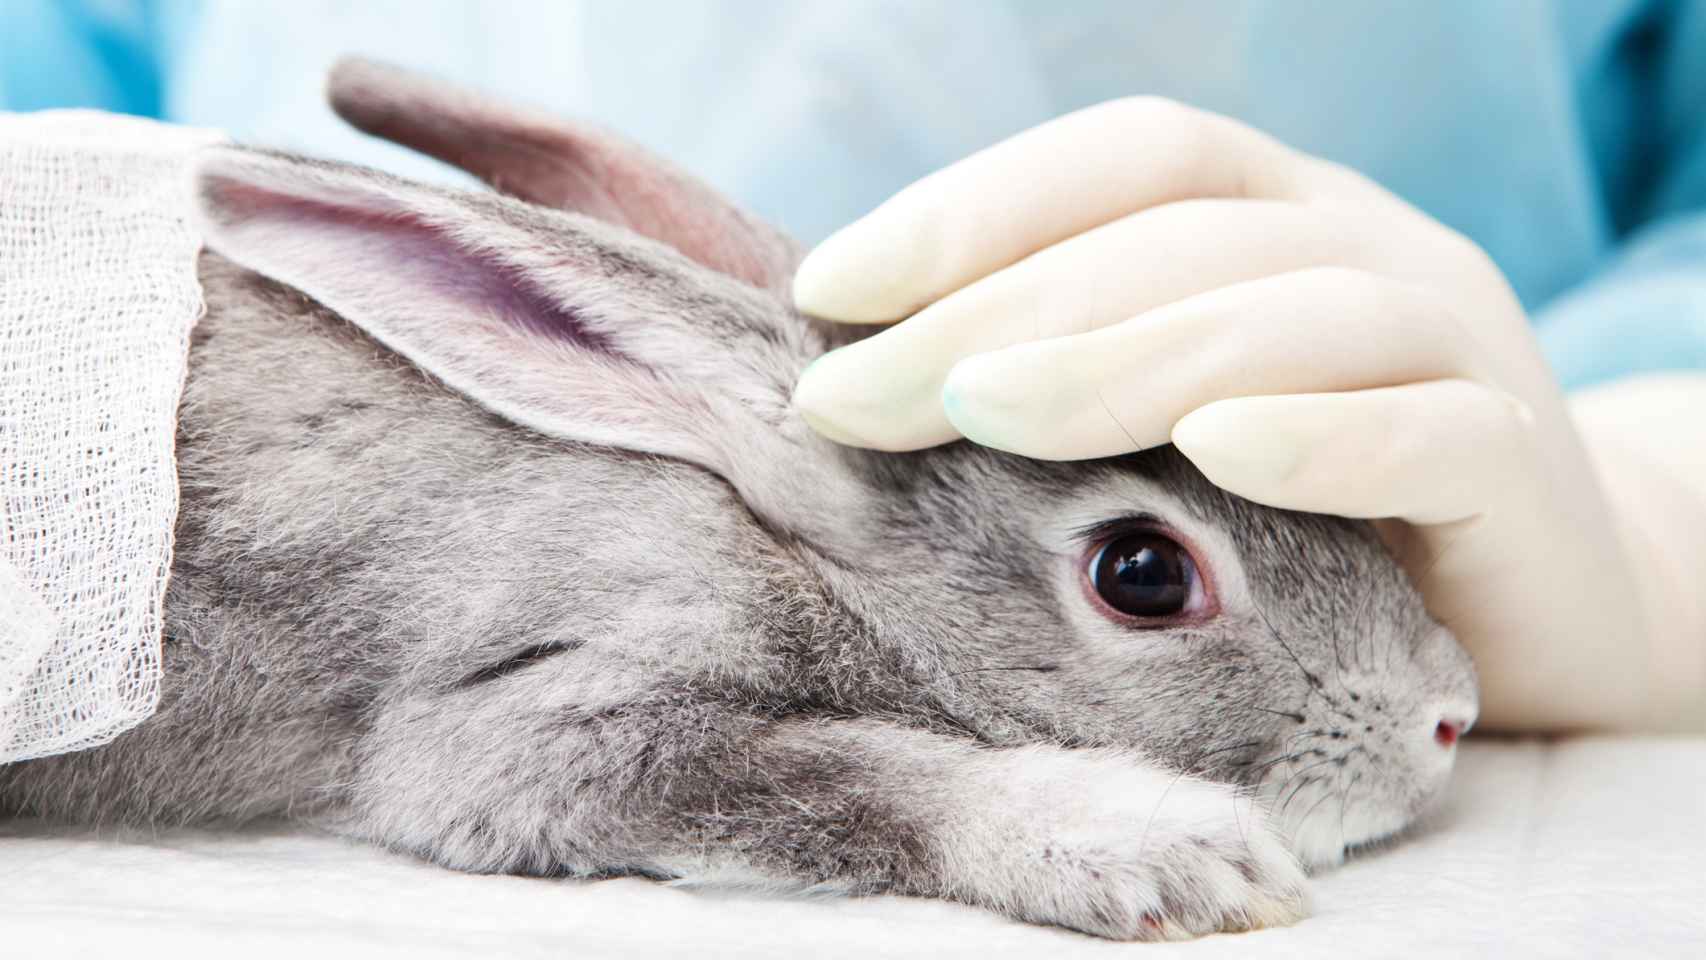 El vídeo de Cruelty Free International muestra maltratos y sufrimientos de cientos de animales, entre ellos, conejos.